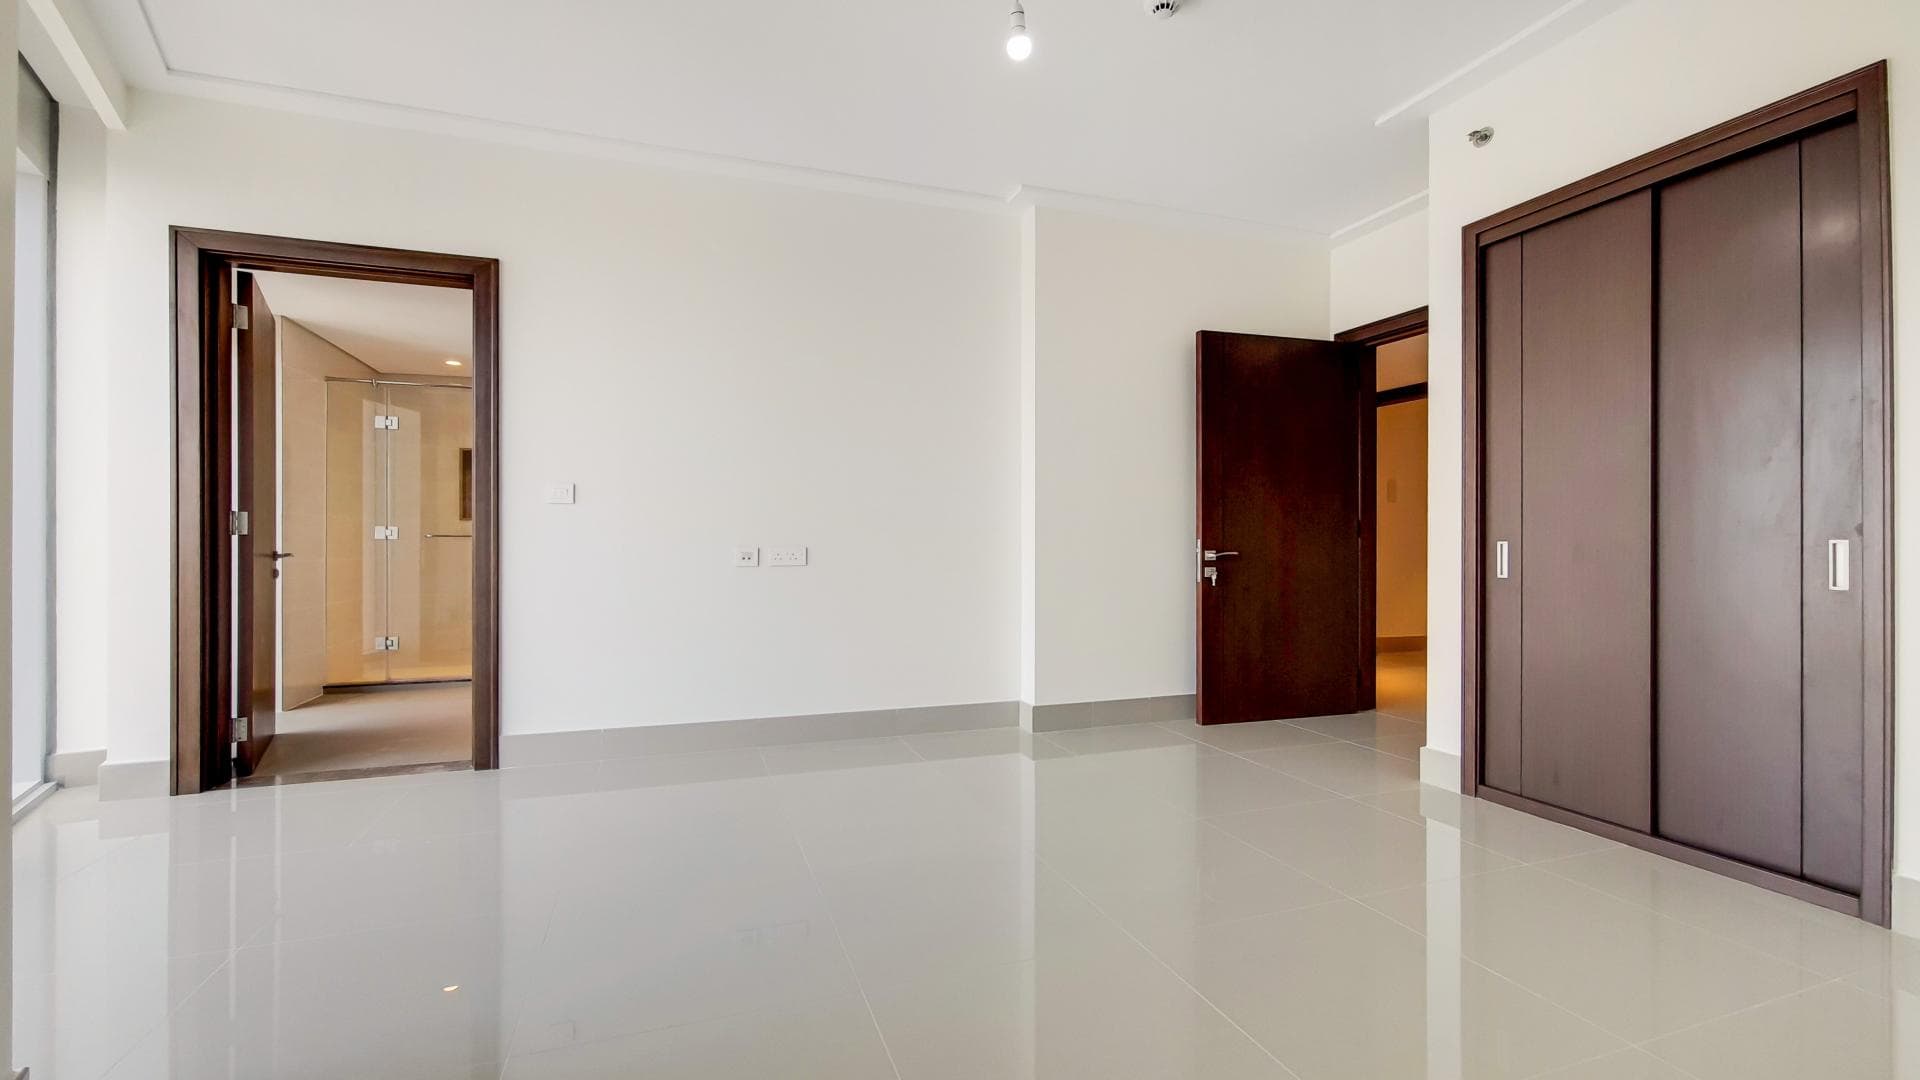 2 Bedroom Apartment For Sale Al Ramth 21 Lp38424 F6d8696e2d33700.jpg